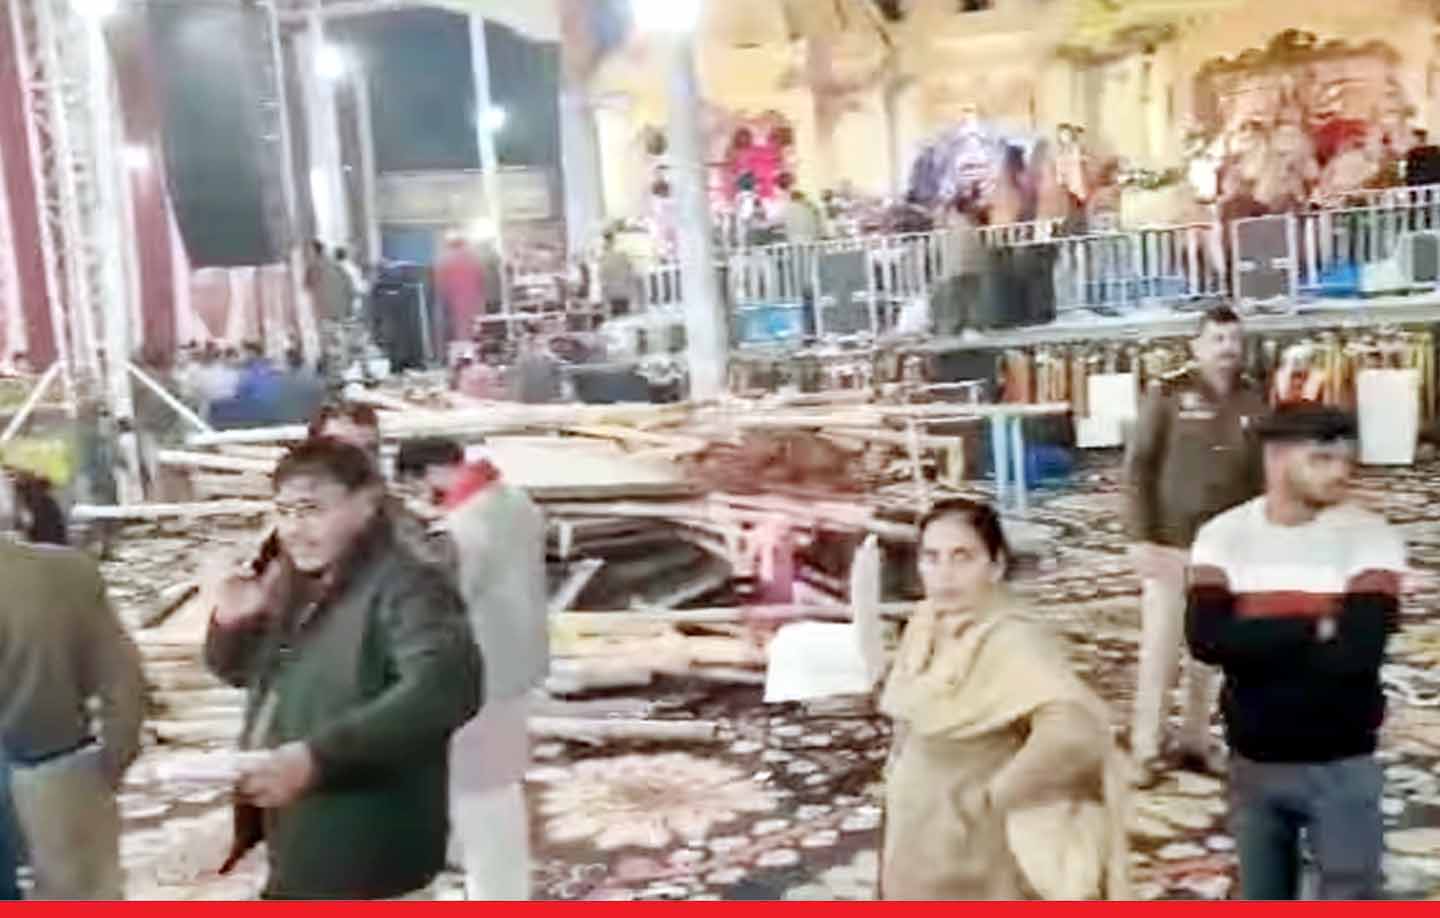 दिल्ली: कालका जी मंदिर में जगराते के दौरान मंच गिरने से 1 महिला की मौत, 17 घायल